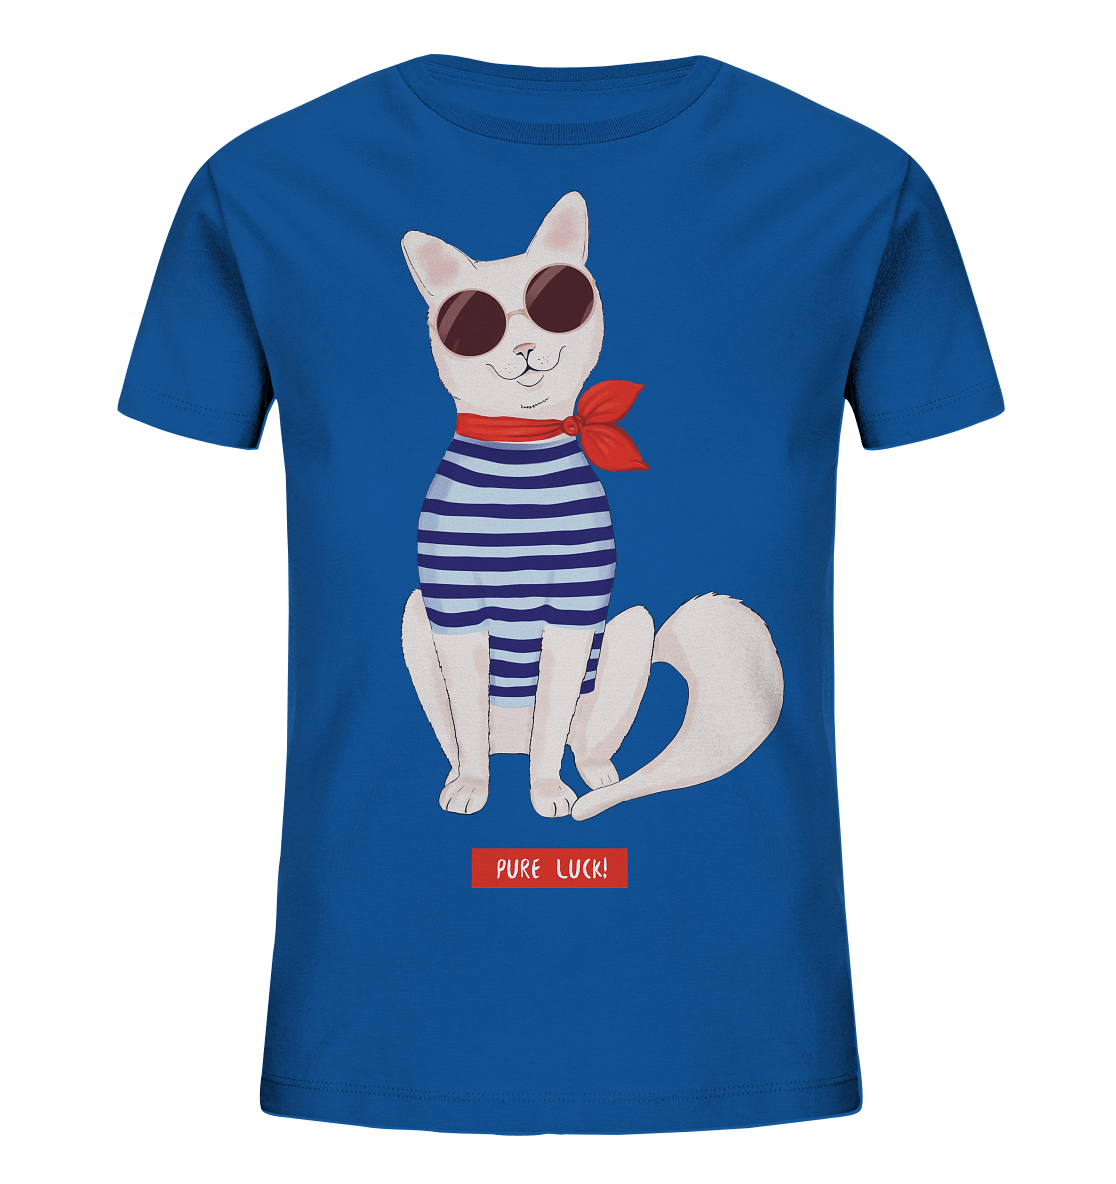 Maritime Katze Comic Kinder Shirt in royal blau mit Katze mit runder Sonnenbrille mit Matrosenhemd Pure Luck Print von BLOOMINIC